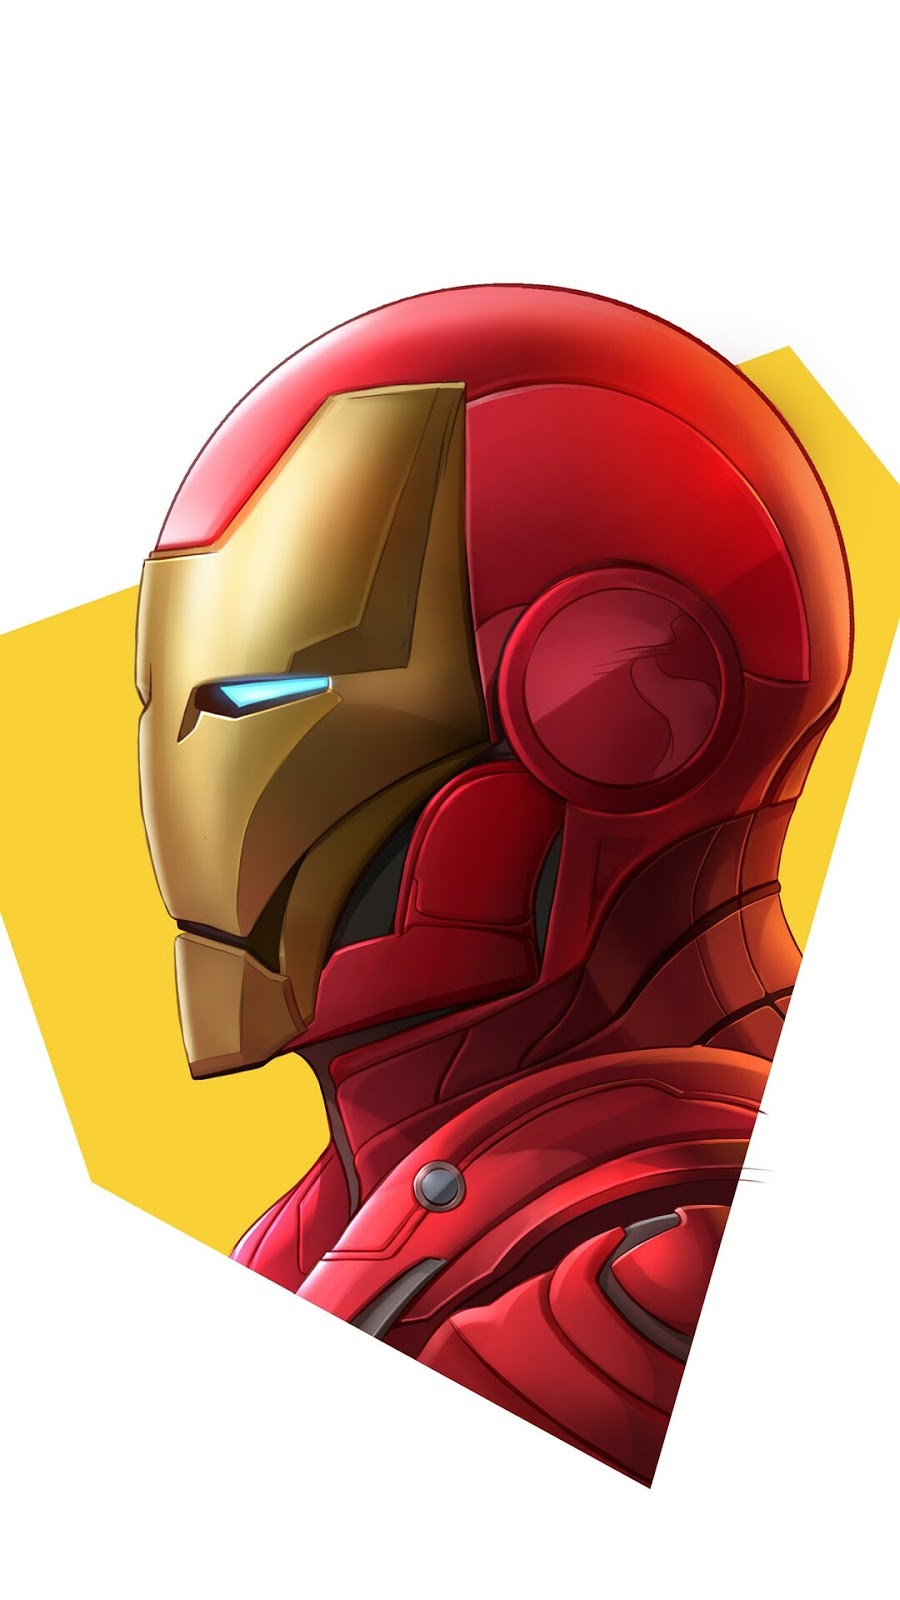 Download Wallpaper Iron Man Minimal, Hd, 4k Images.